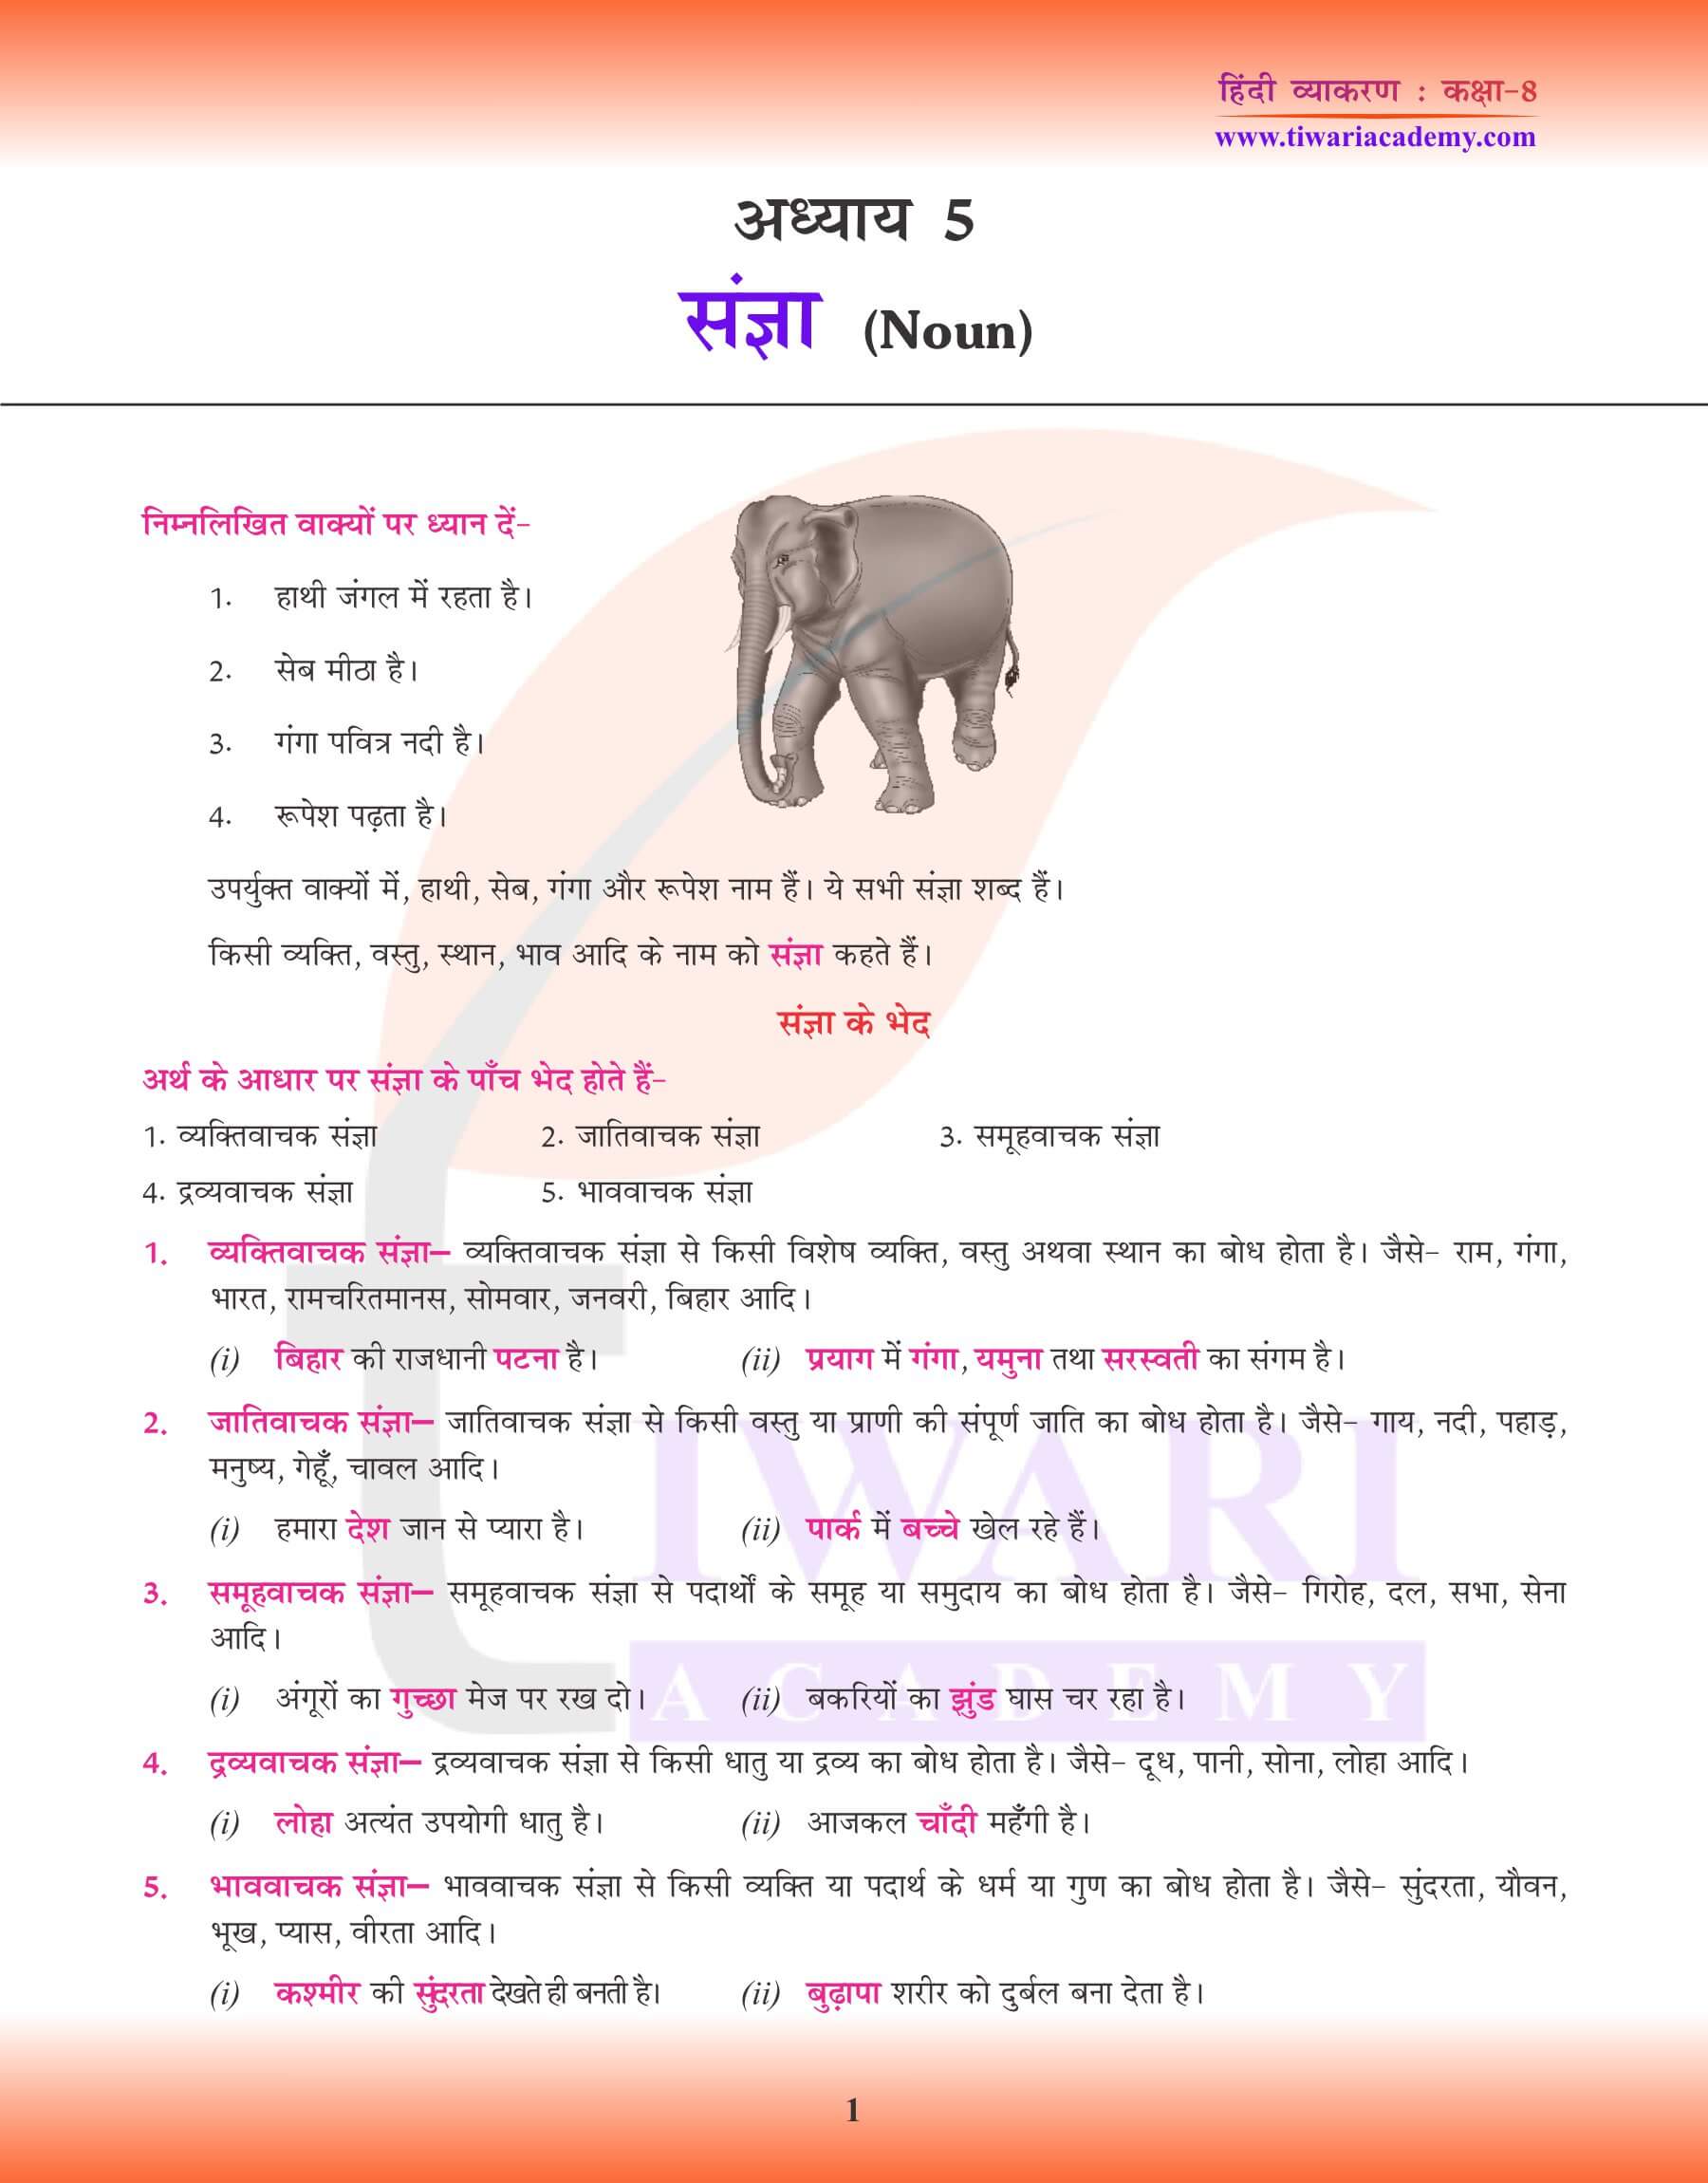 कक्षा 8 हिंदी व्याकरण में संज्ञा के भेद